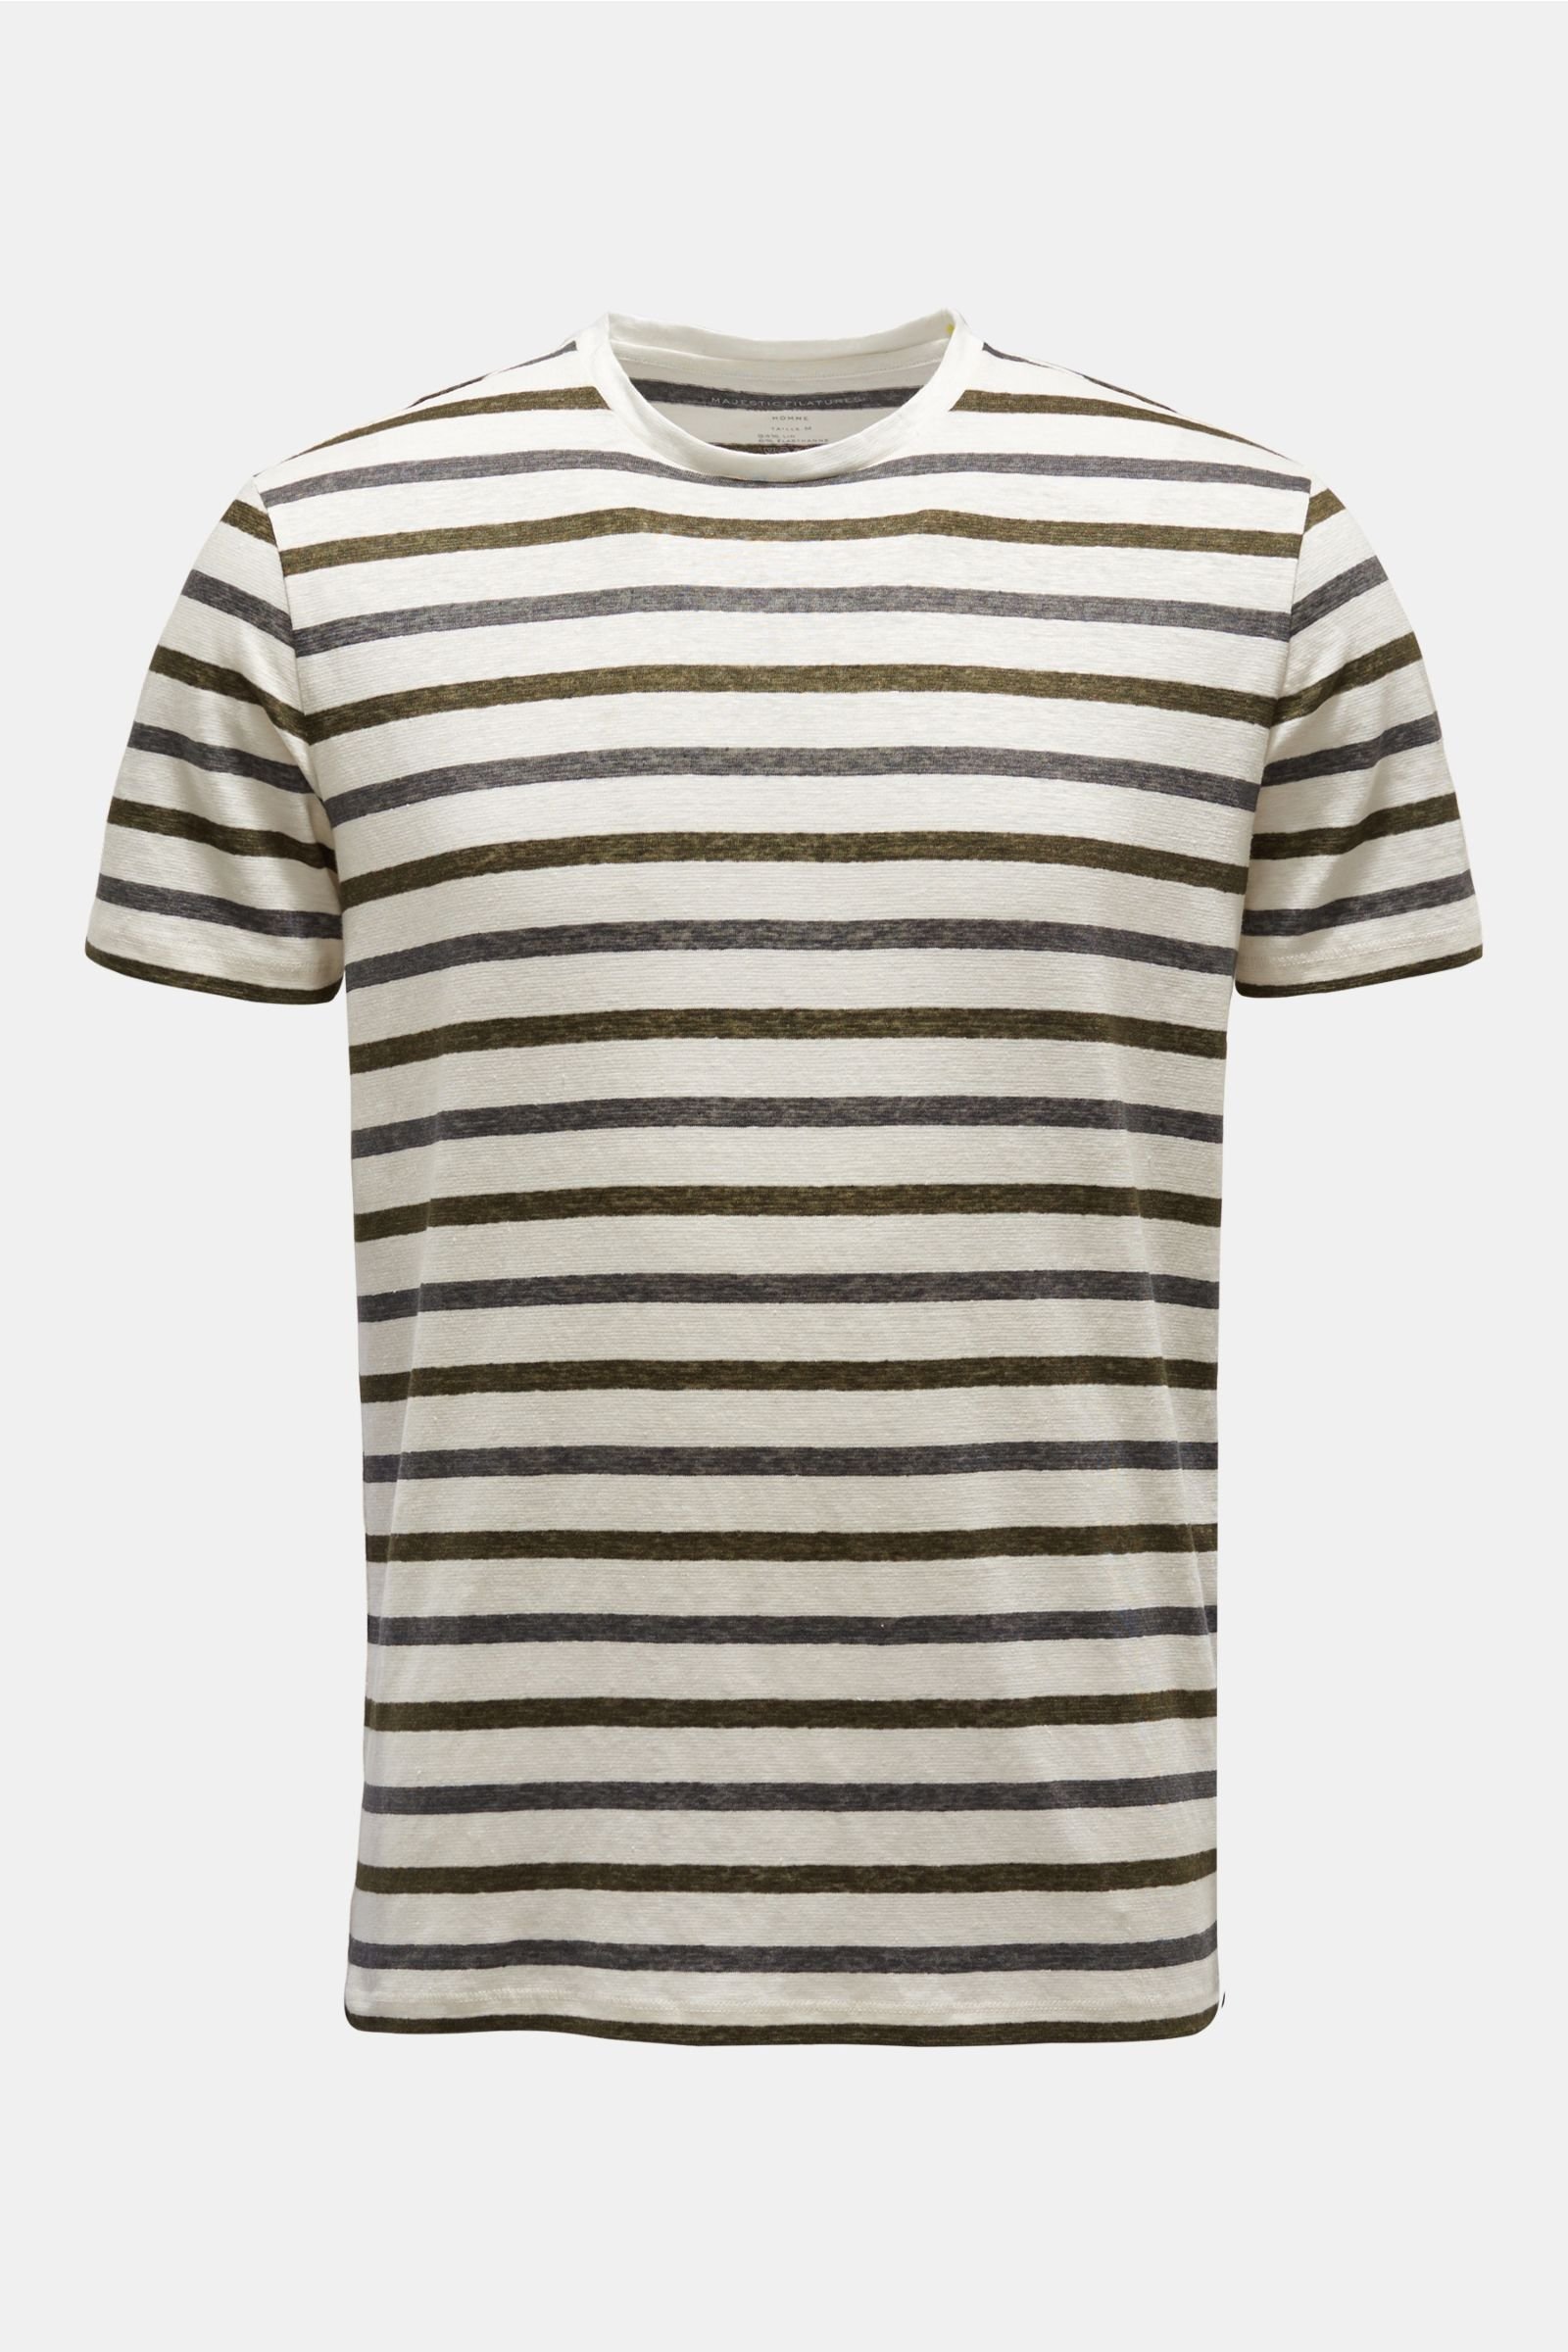 Linen crew neck T-shirt dark grey/olive striped